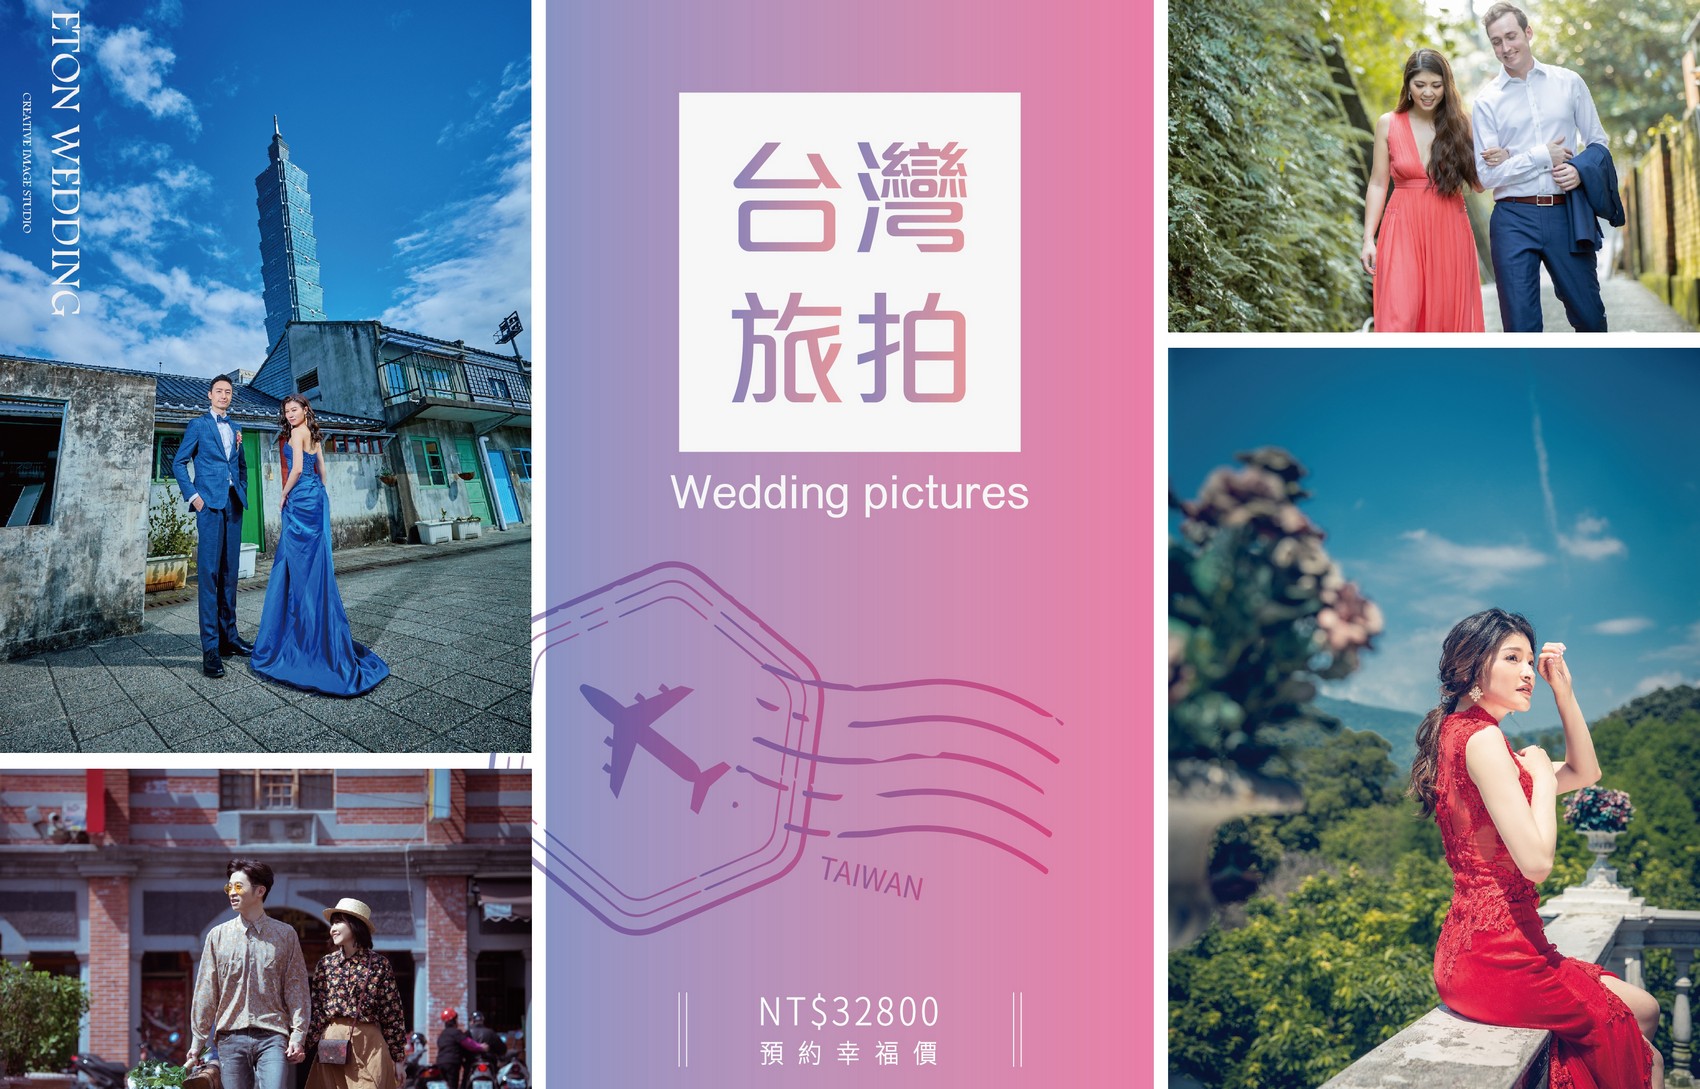 台灣 婚紗工作室,台灣 婚紗攝影價格,高雄拍婚紗,高雄 婚紗攝影,高雄 婚紗工作室